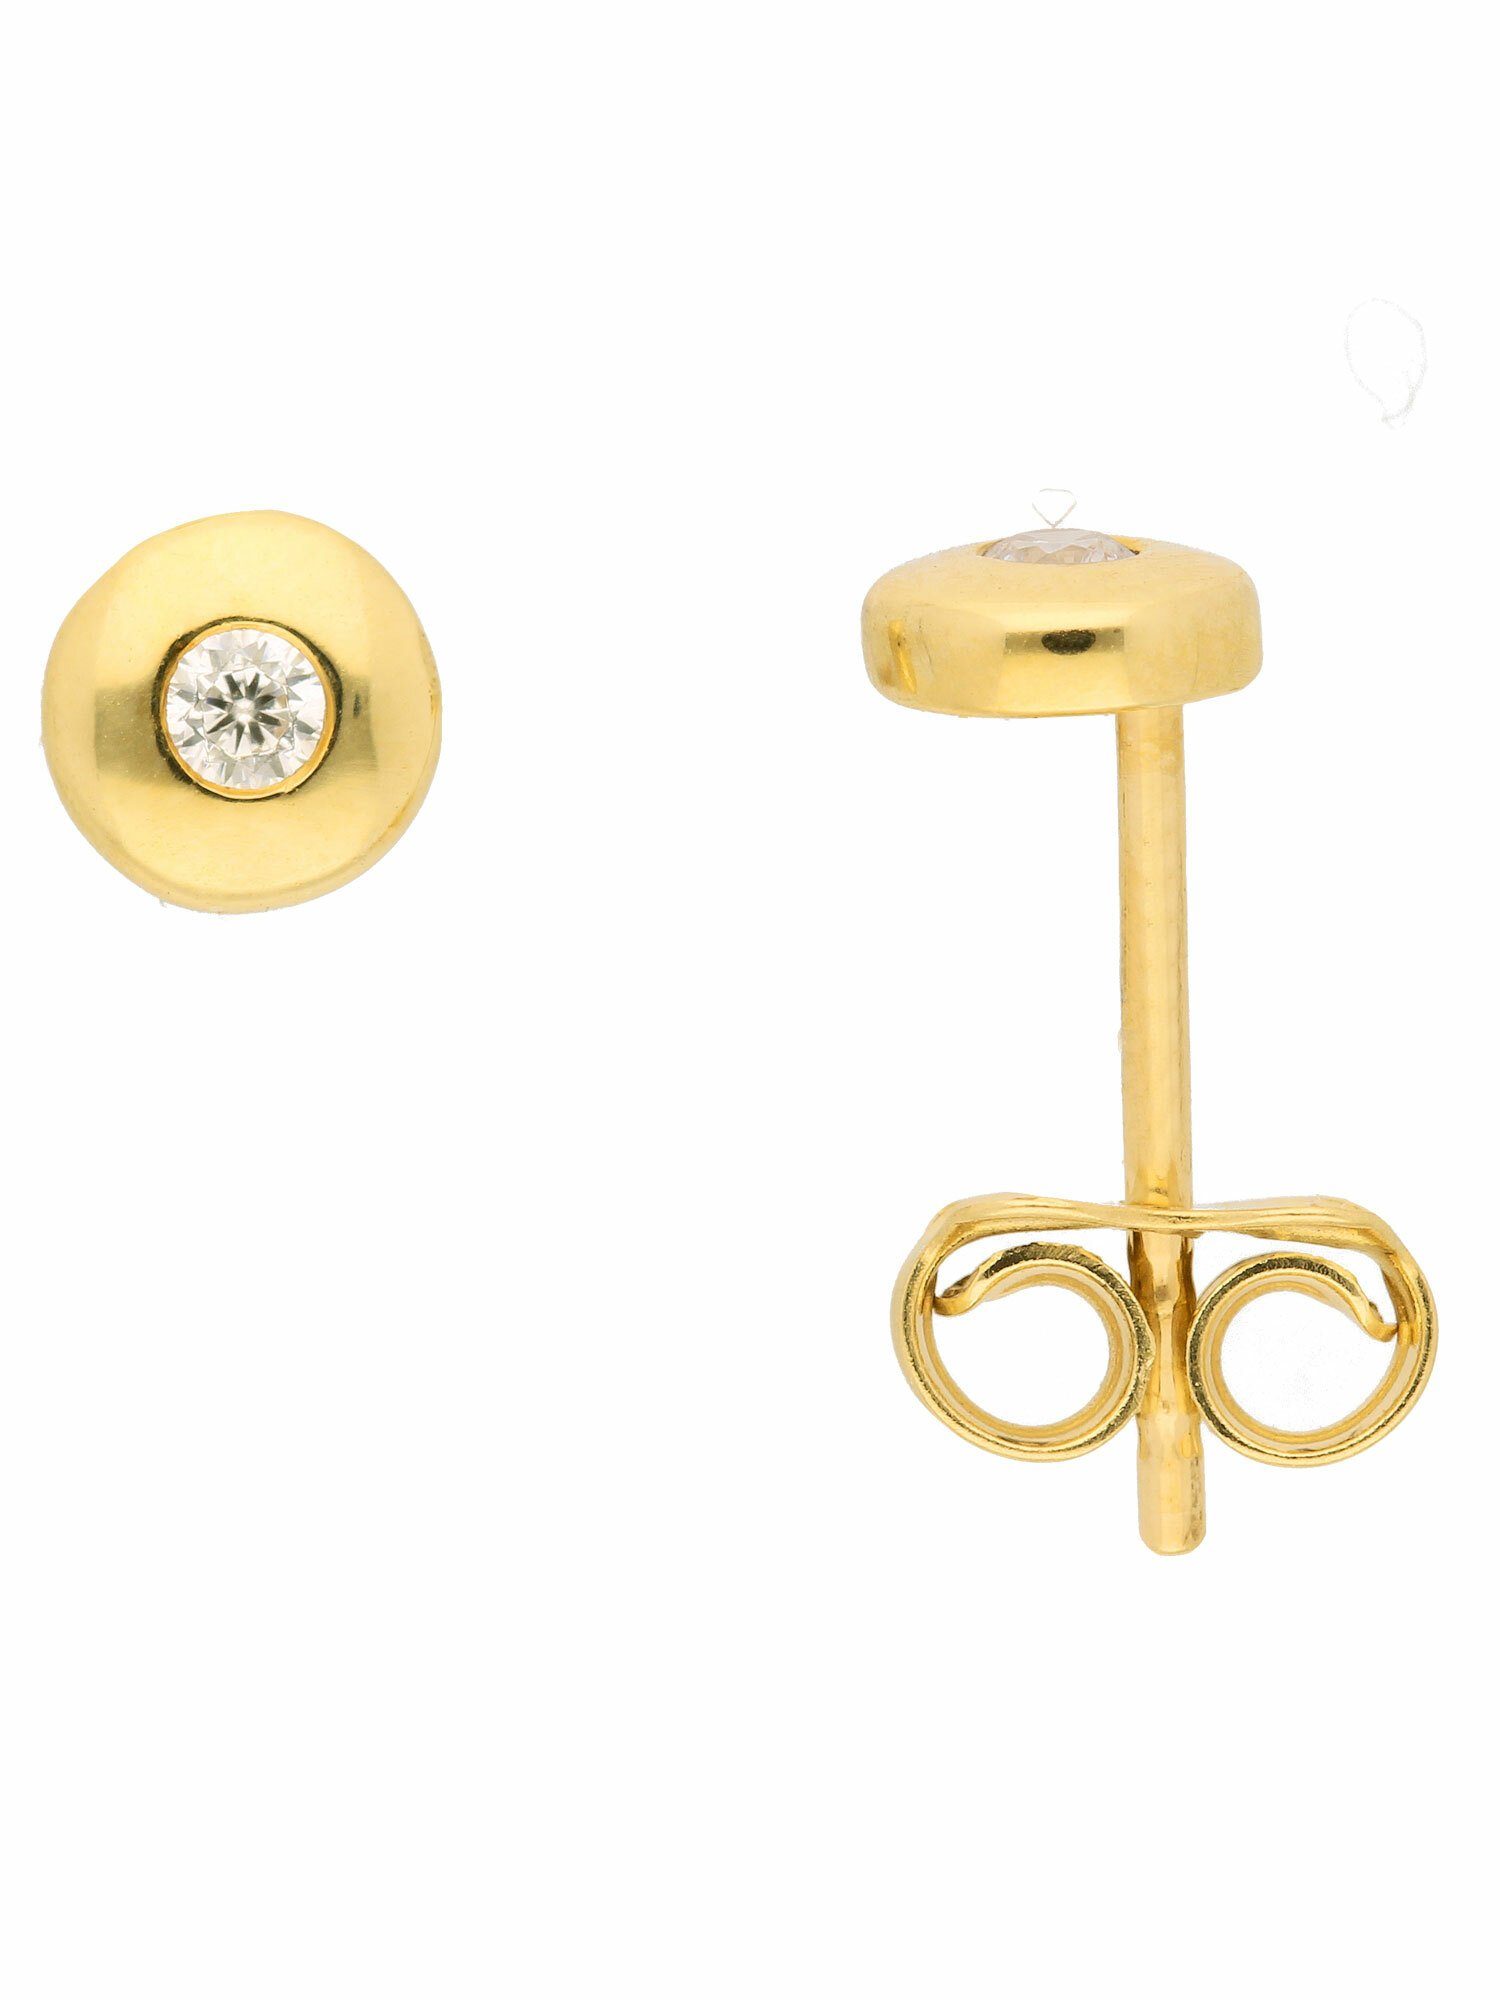 Damen Schmuck Adelia´s Paar Ohrhänger 1 Paar 585 Gold Ohrringe / Ohrstecker mit Zirkonia Ø 5 mm, 585 Gold Goldschmuck für Damen